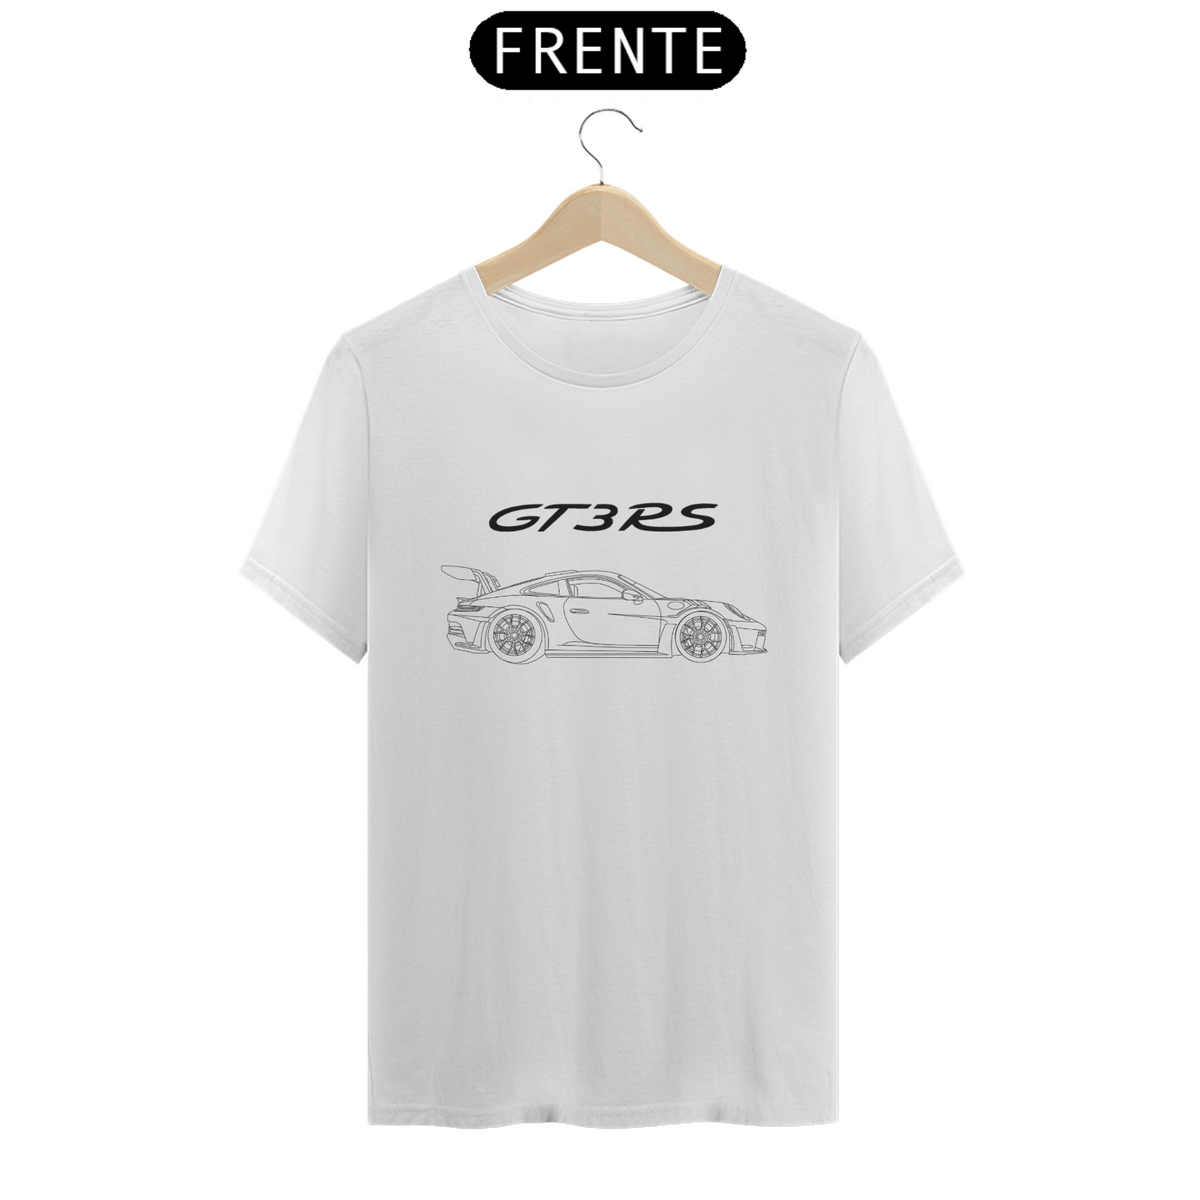 Nome do produto: Camiseta Porsche GT3RS